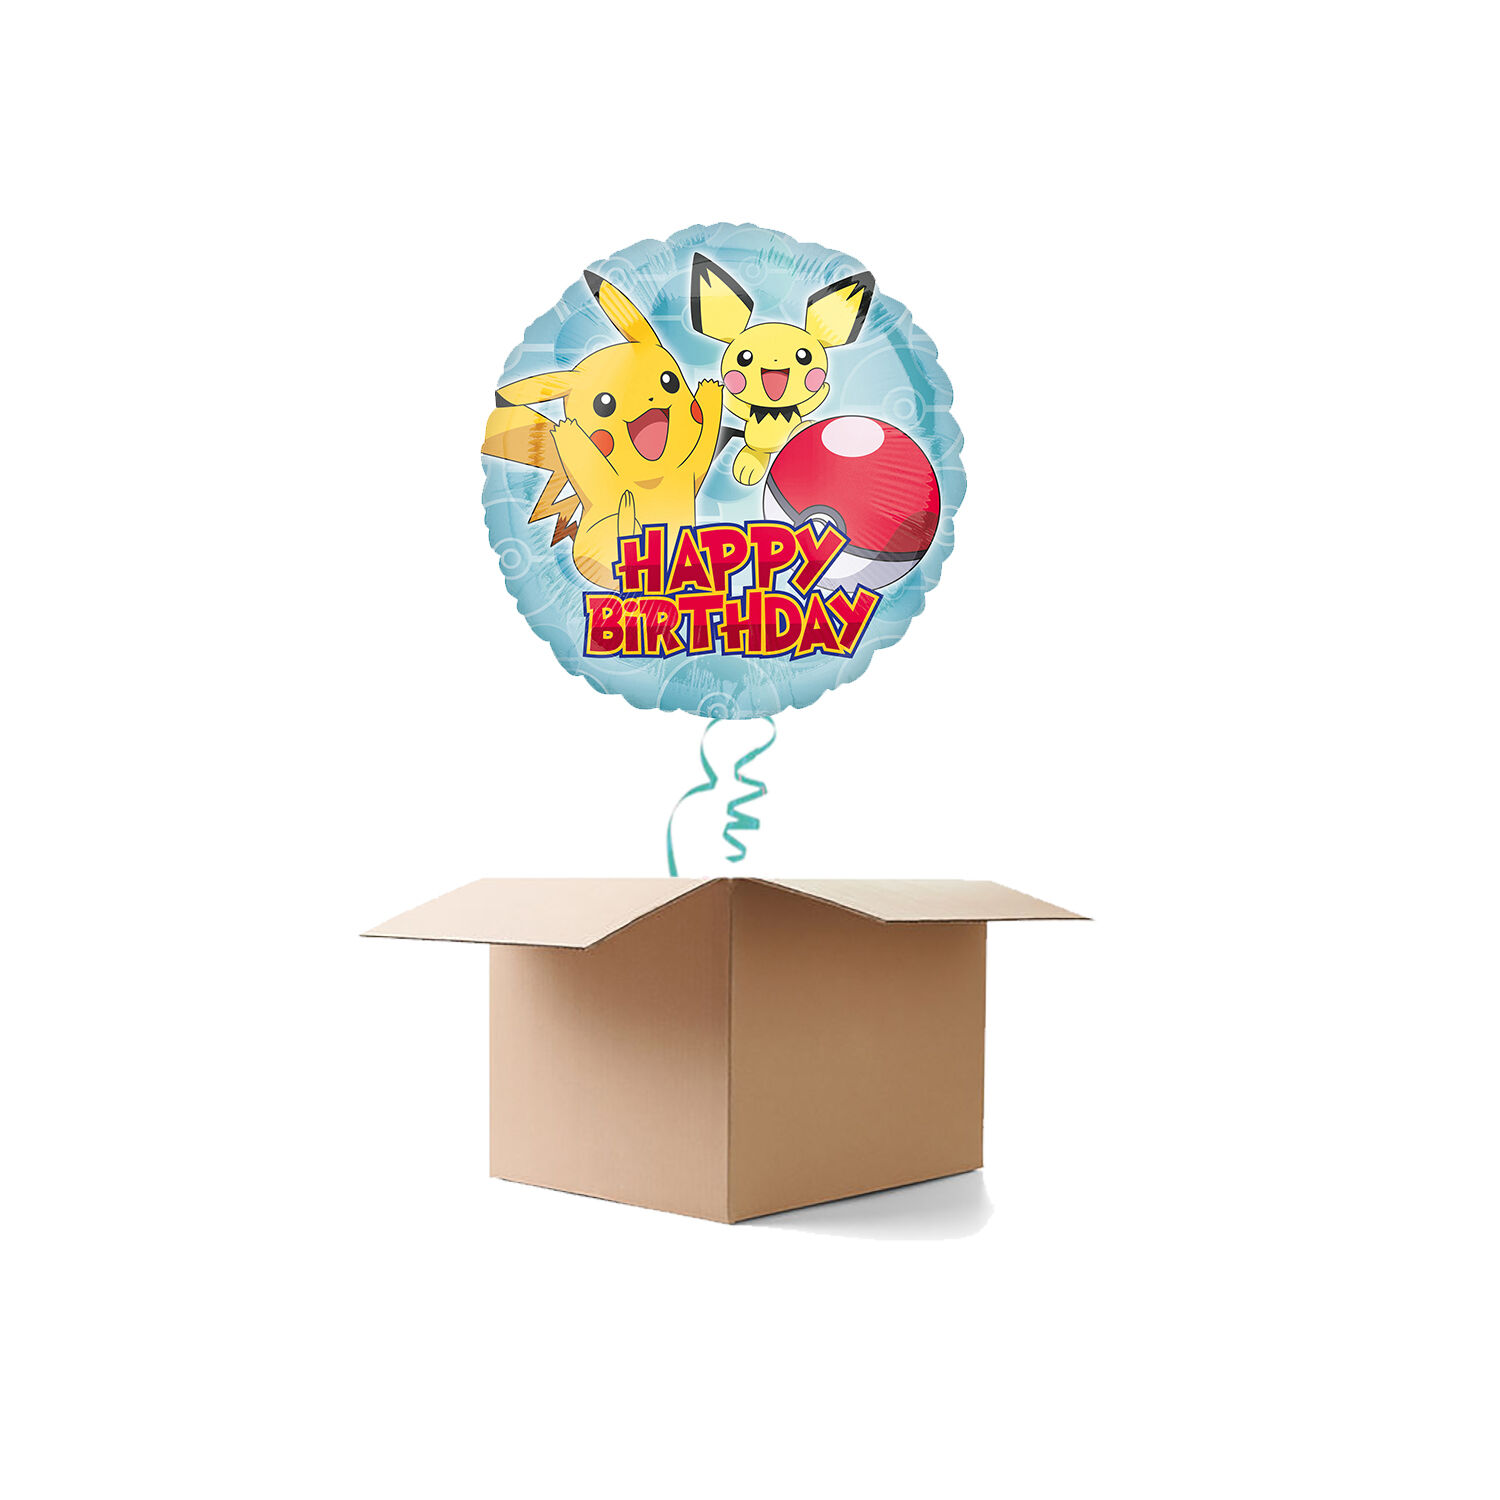 NEU Ballongre Happy Birthday Pokemon, 1 Ballon